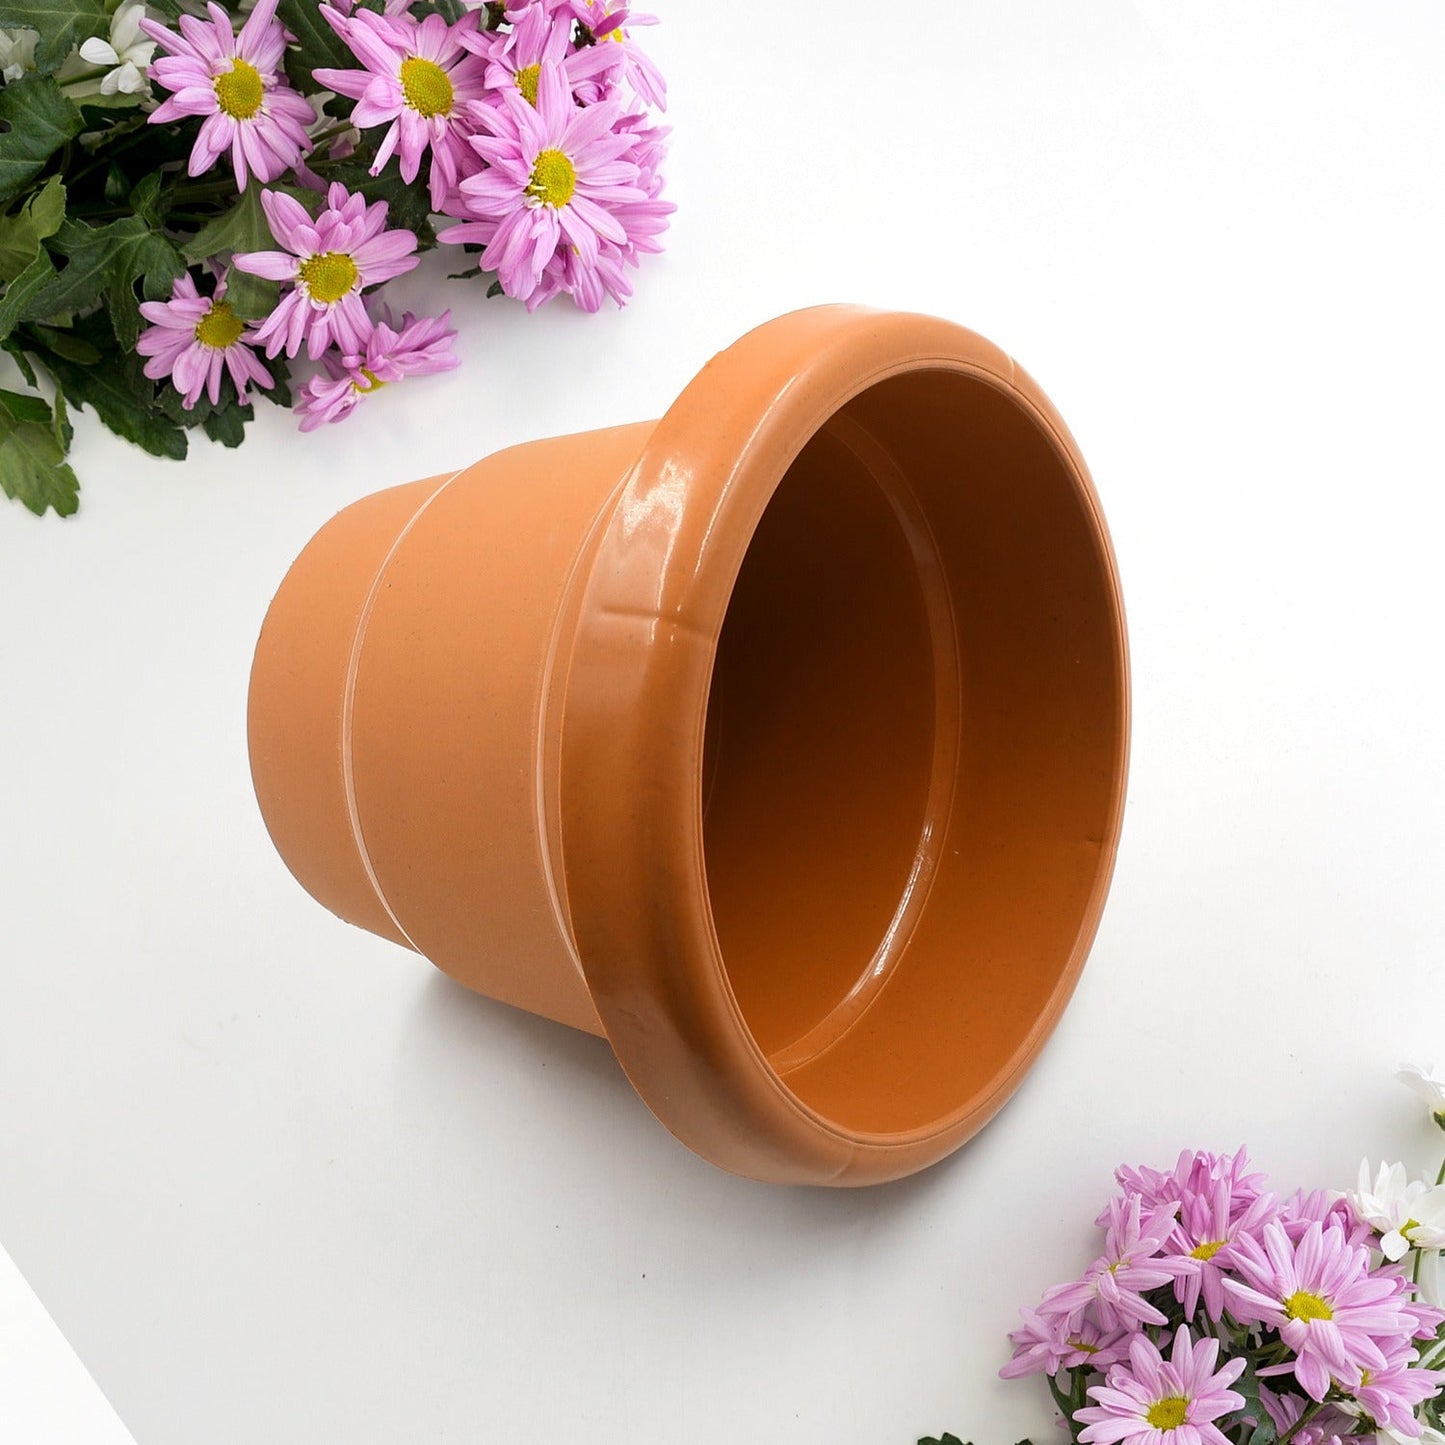 0744 Home Garden Heavy Plastic Flower Planter Round  Pot/Gamla 13cm, Pack of 1